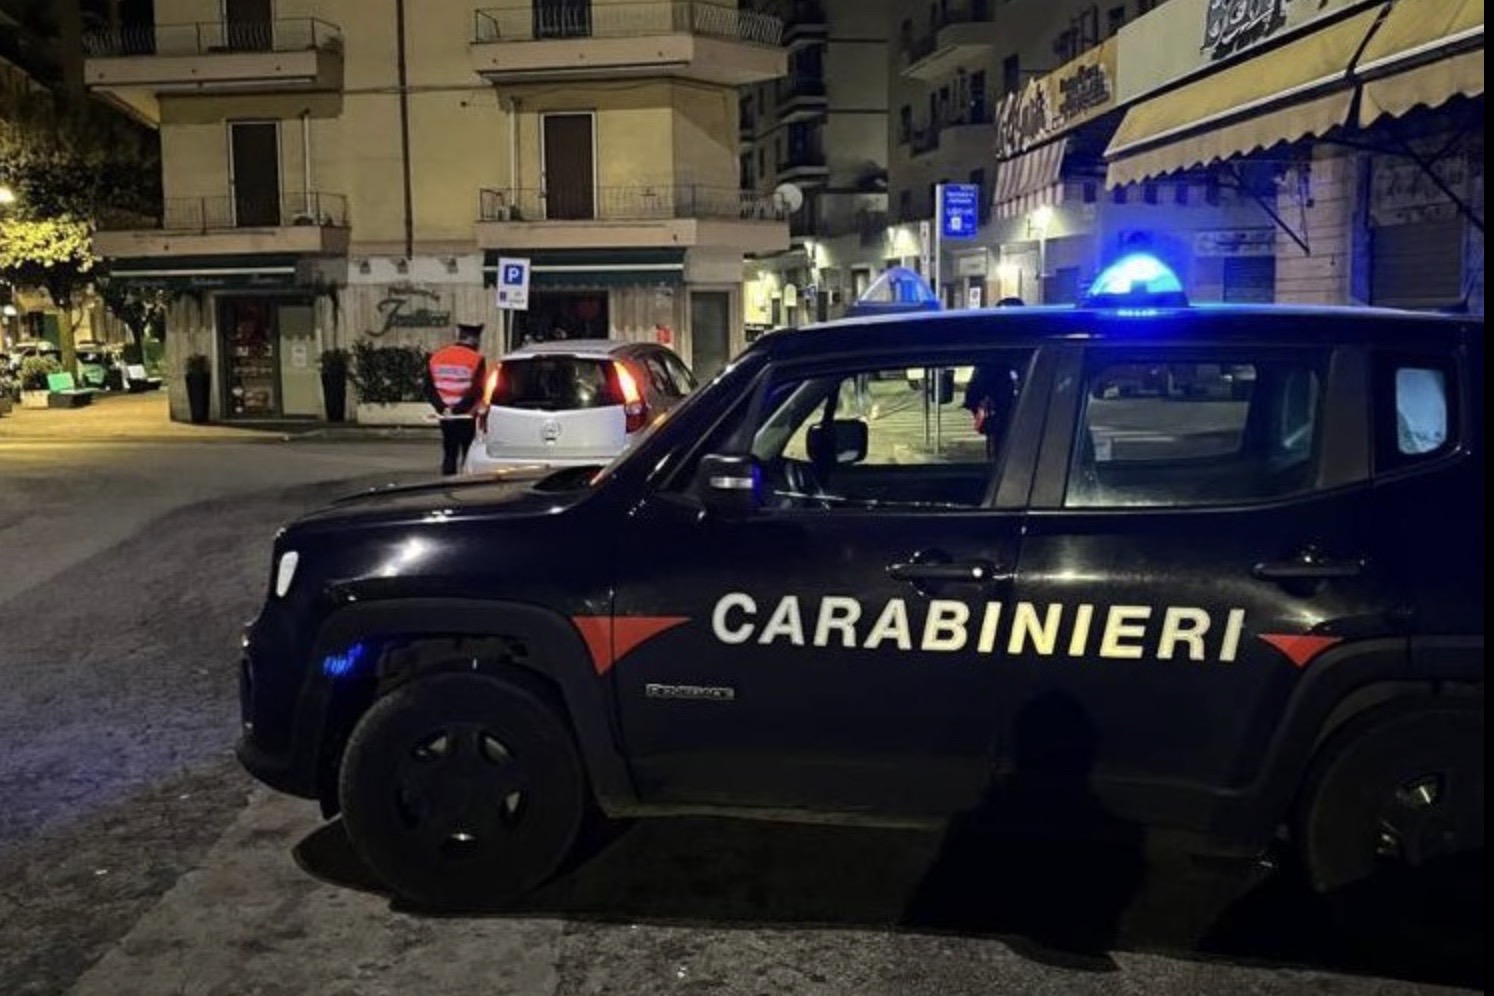 Les contrôles des carabiniers dans les zones "movida" se poursuivent sans relâche à Colleferro